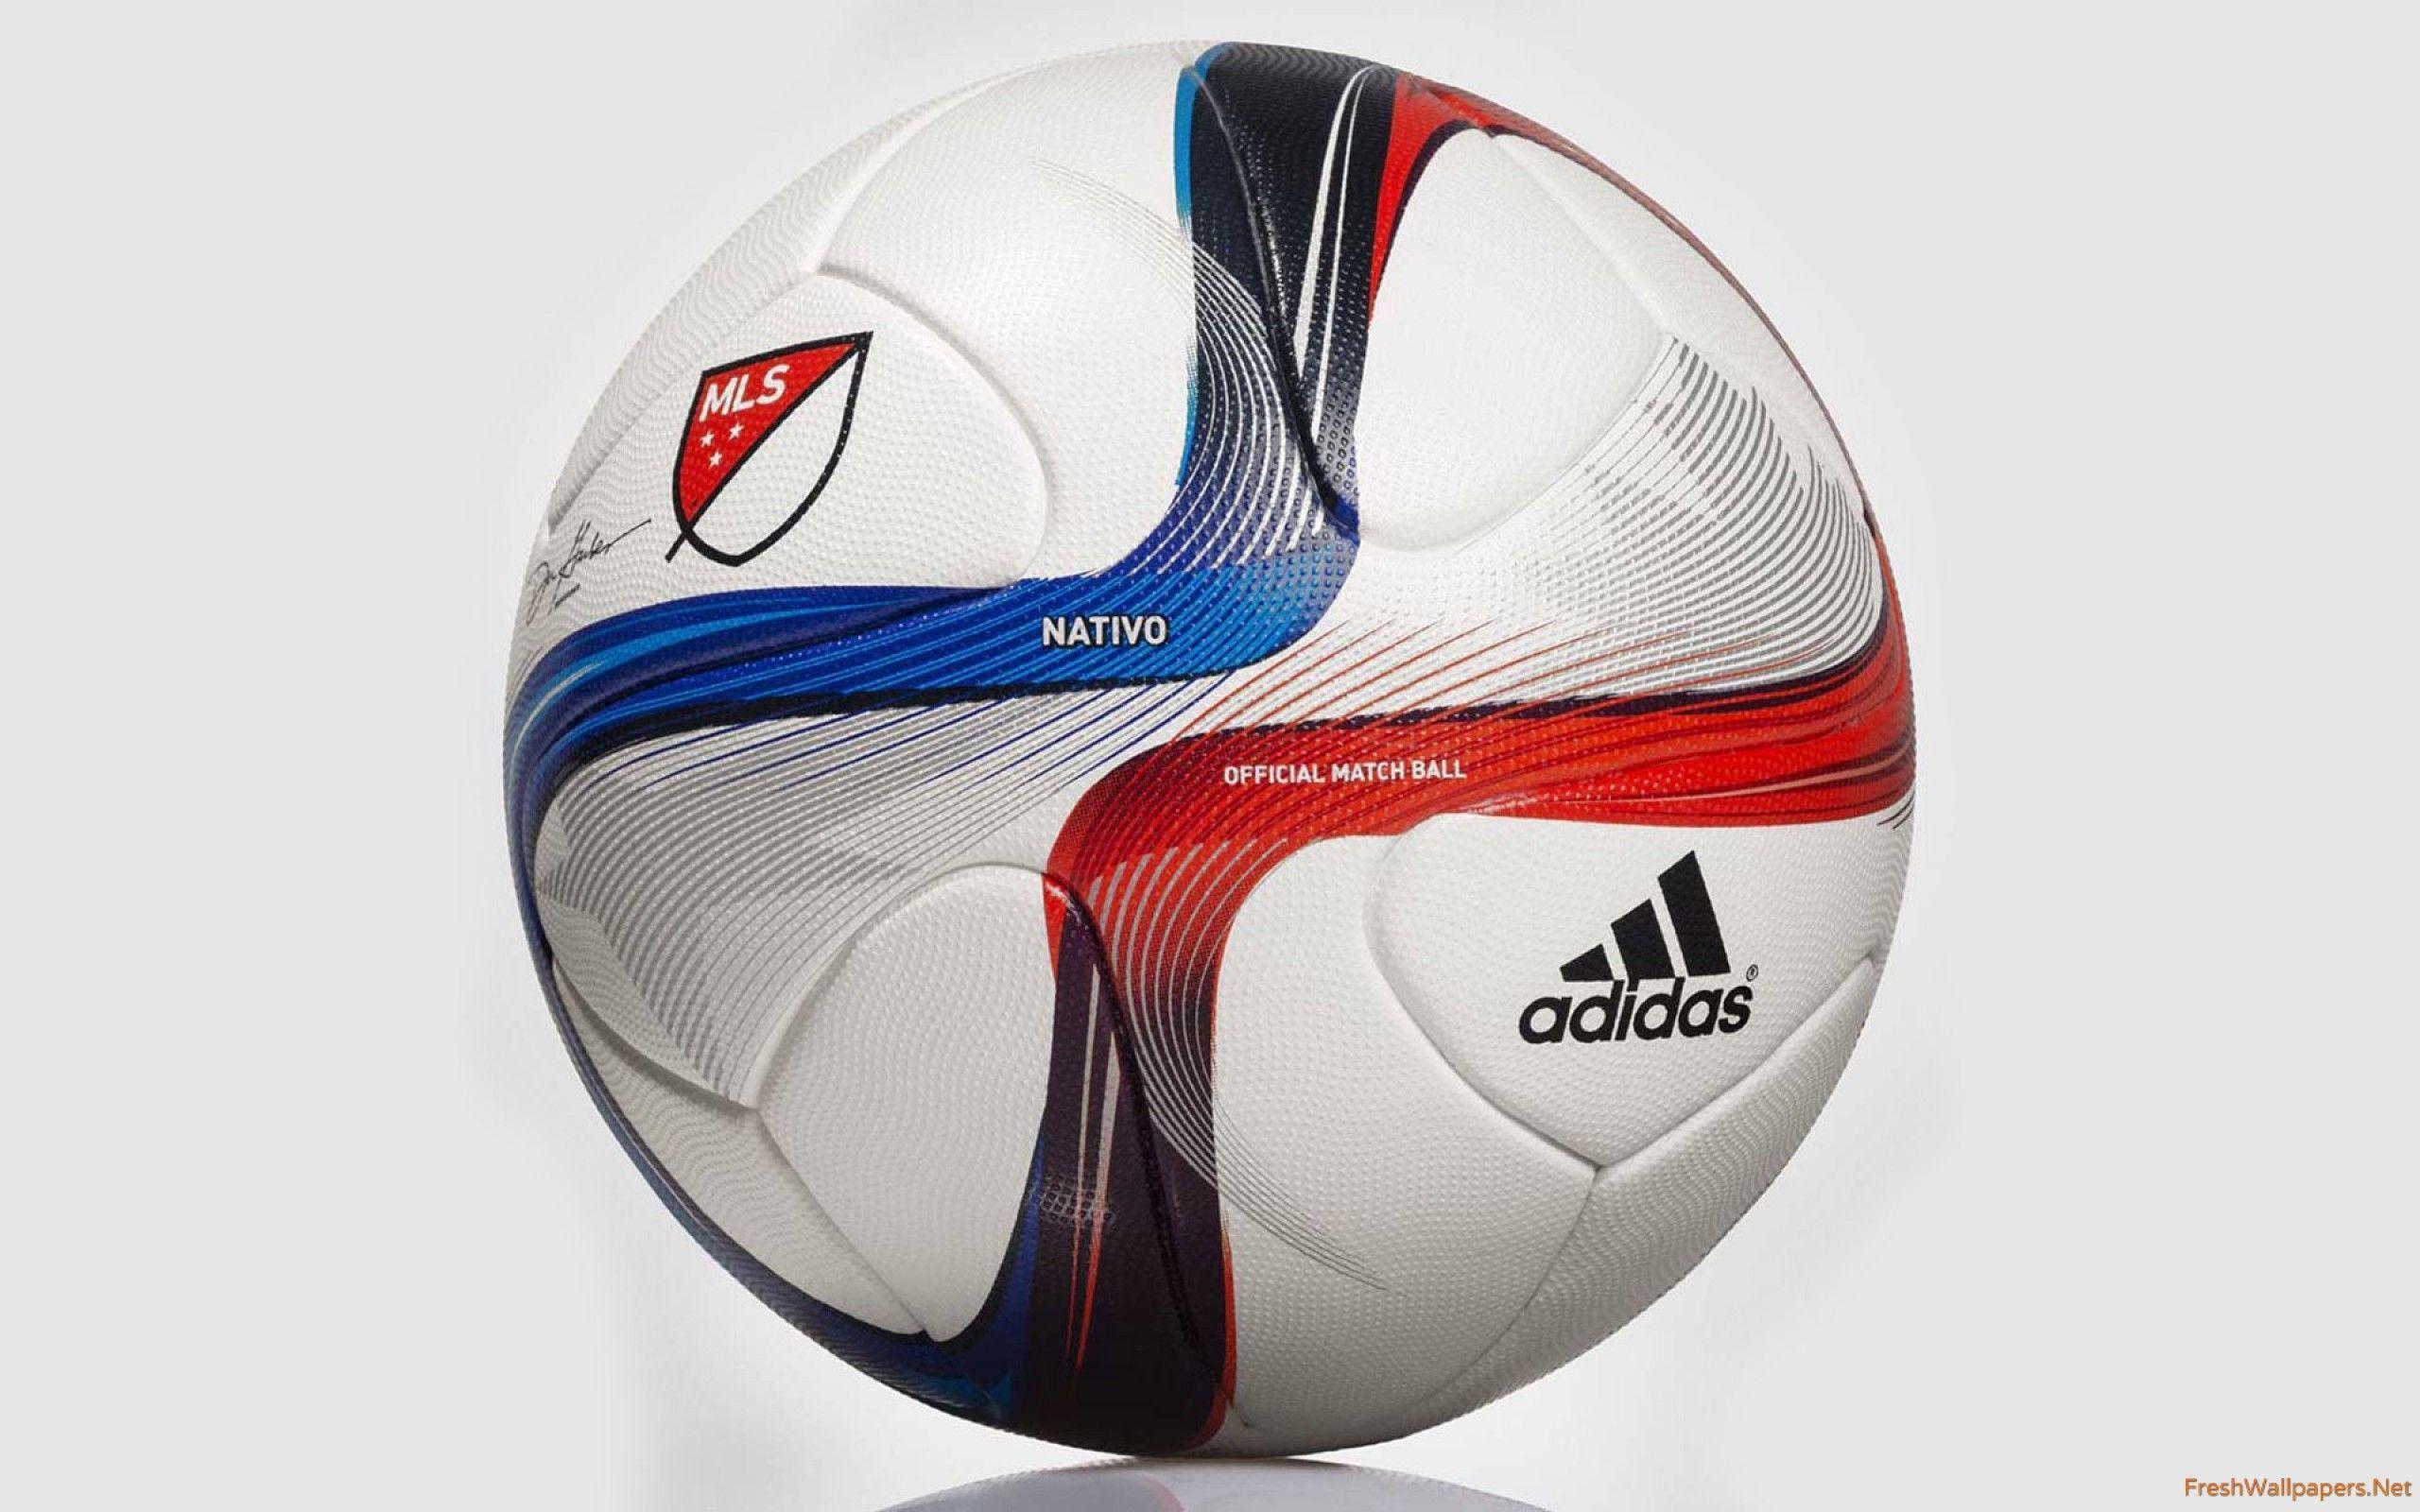 Adidas Nativo 2015 MLS Soccer Ball wallpaper